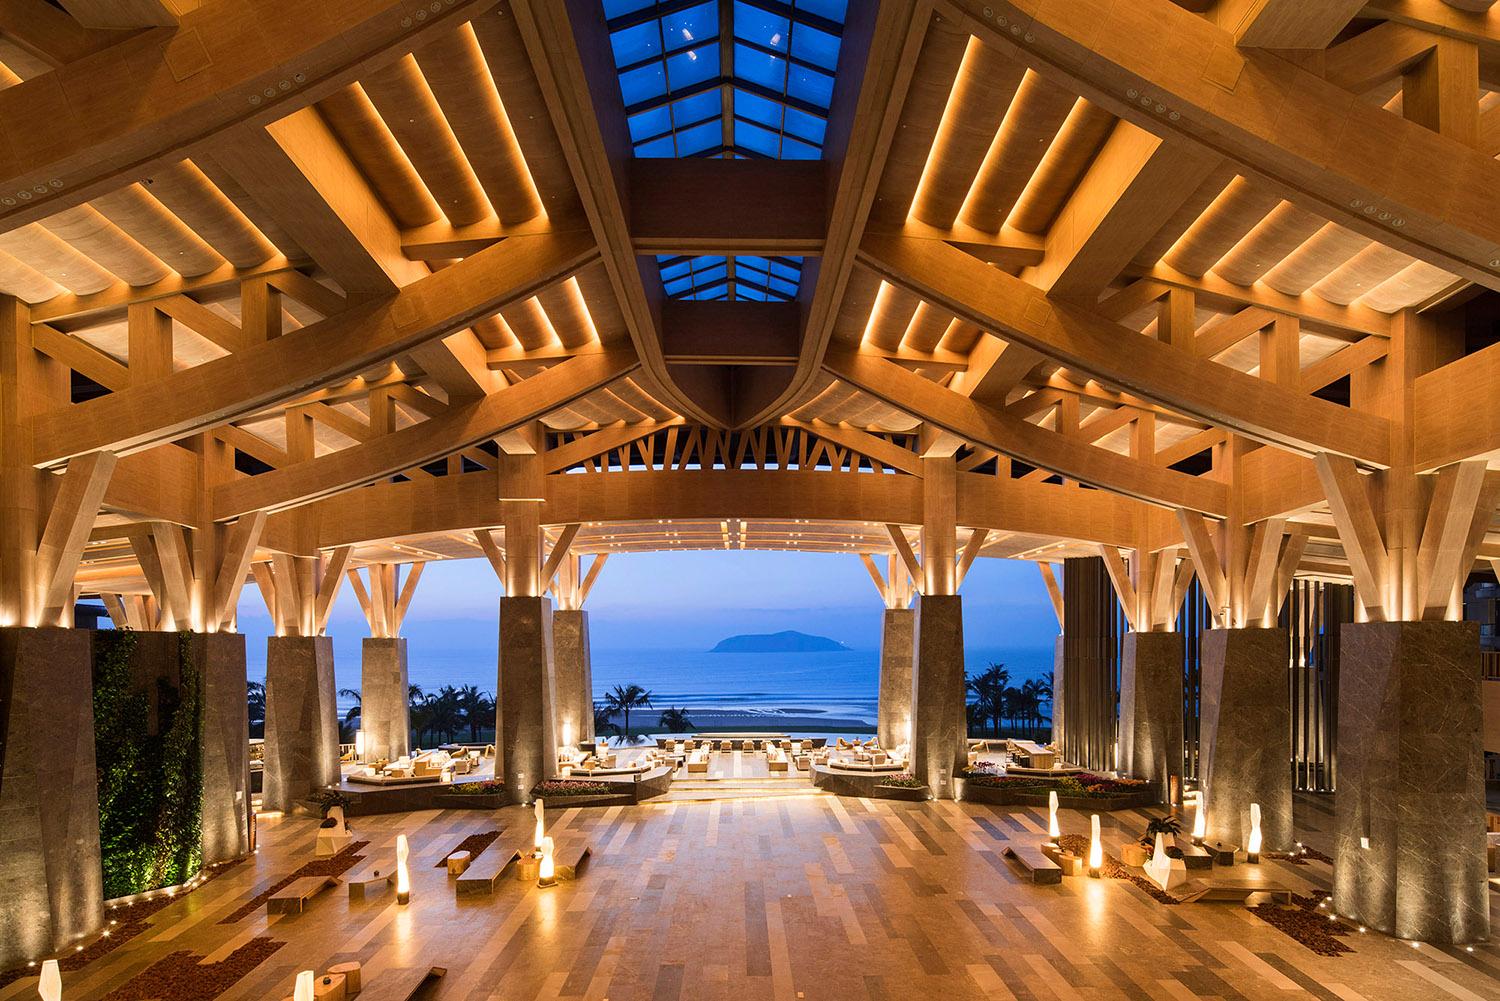 12个世界各地顶级度假酒店设计,中国三家上榜